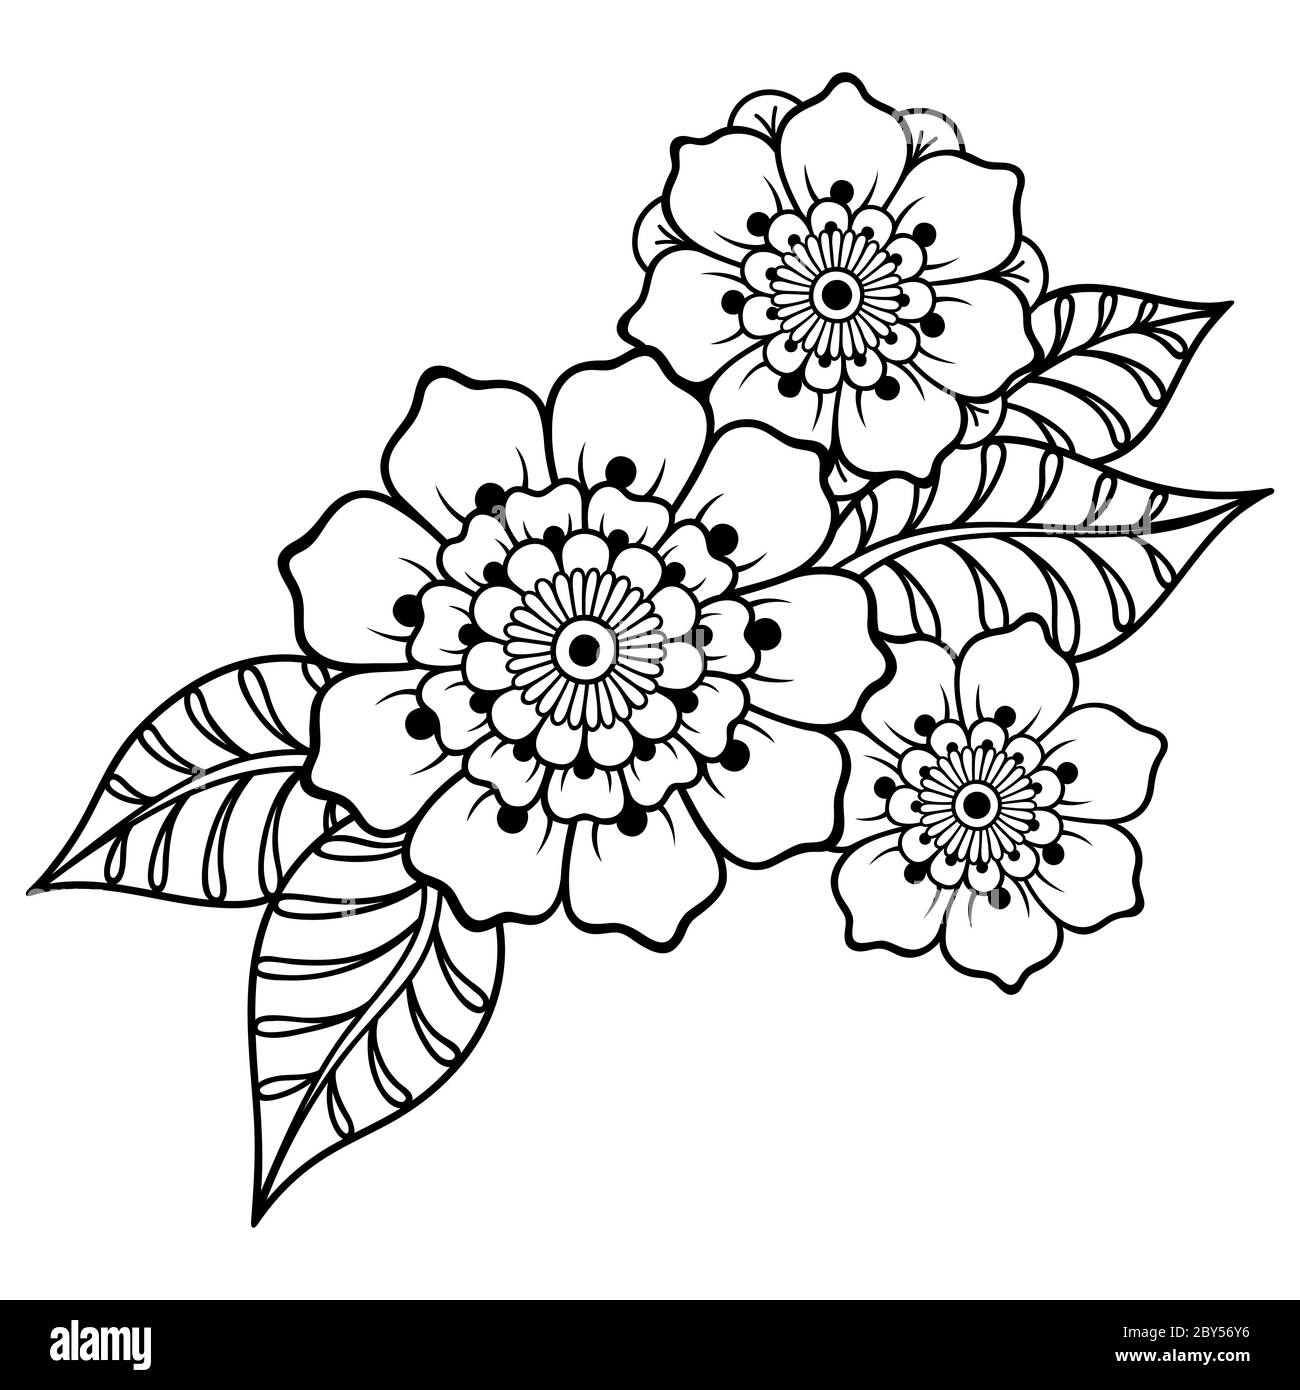 Henna Tattoo Blume Vorlage im indischen Stil. Ethnisches Blumenpaisley -  Lotus. Mehndi-Stil. Ornamentmuster im orientalischen Stil  Stock-Vektorgrafik - Alamy